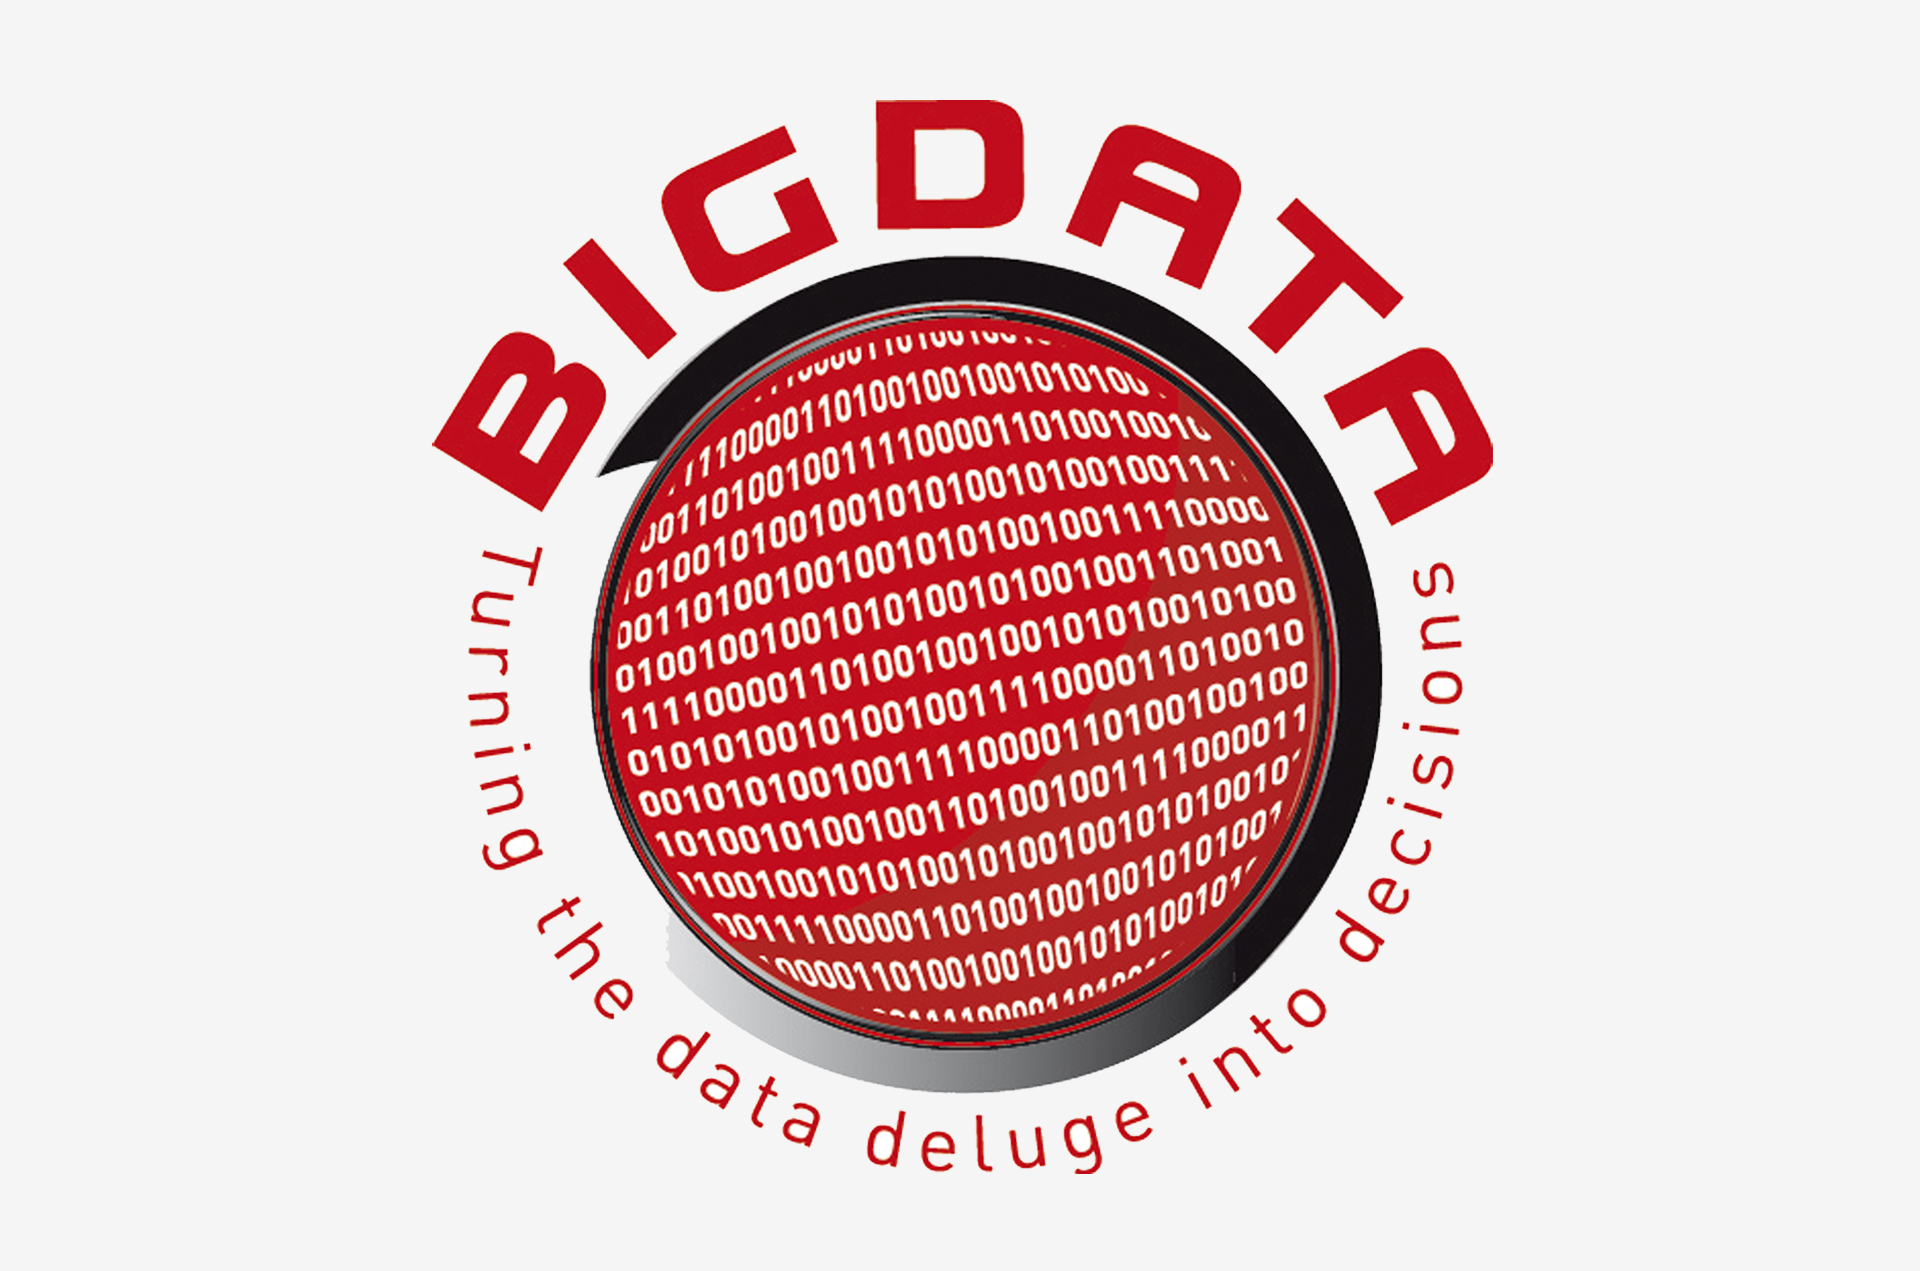 Big Data : du nouveau pour exploiter les données